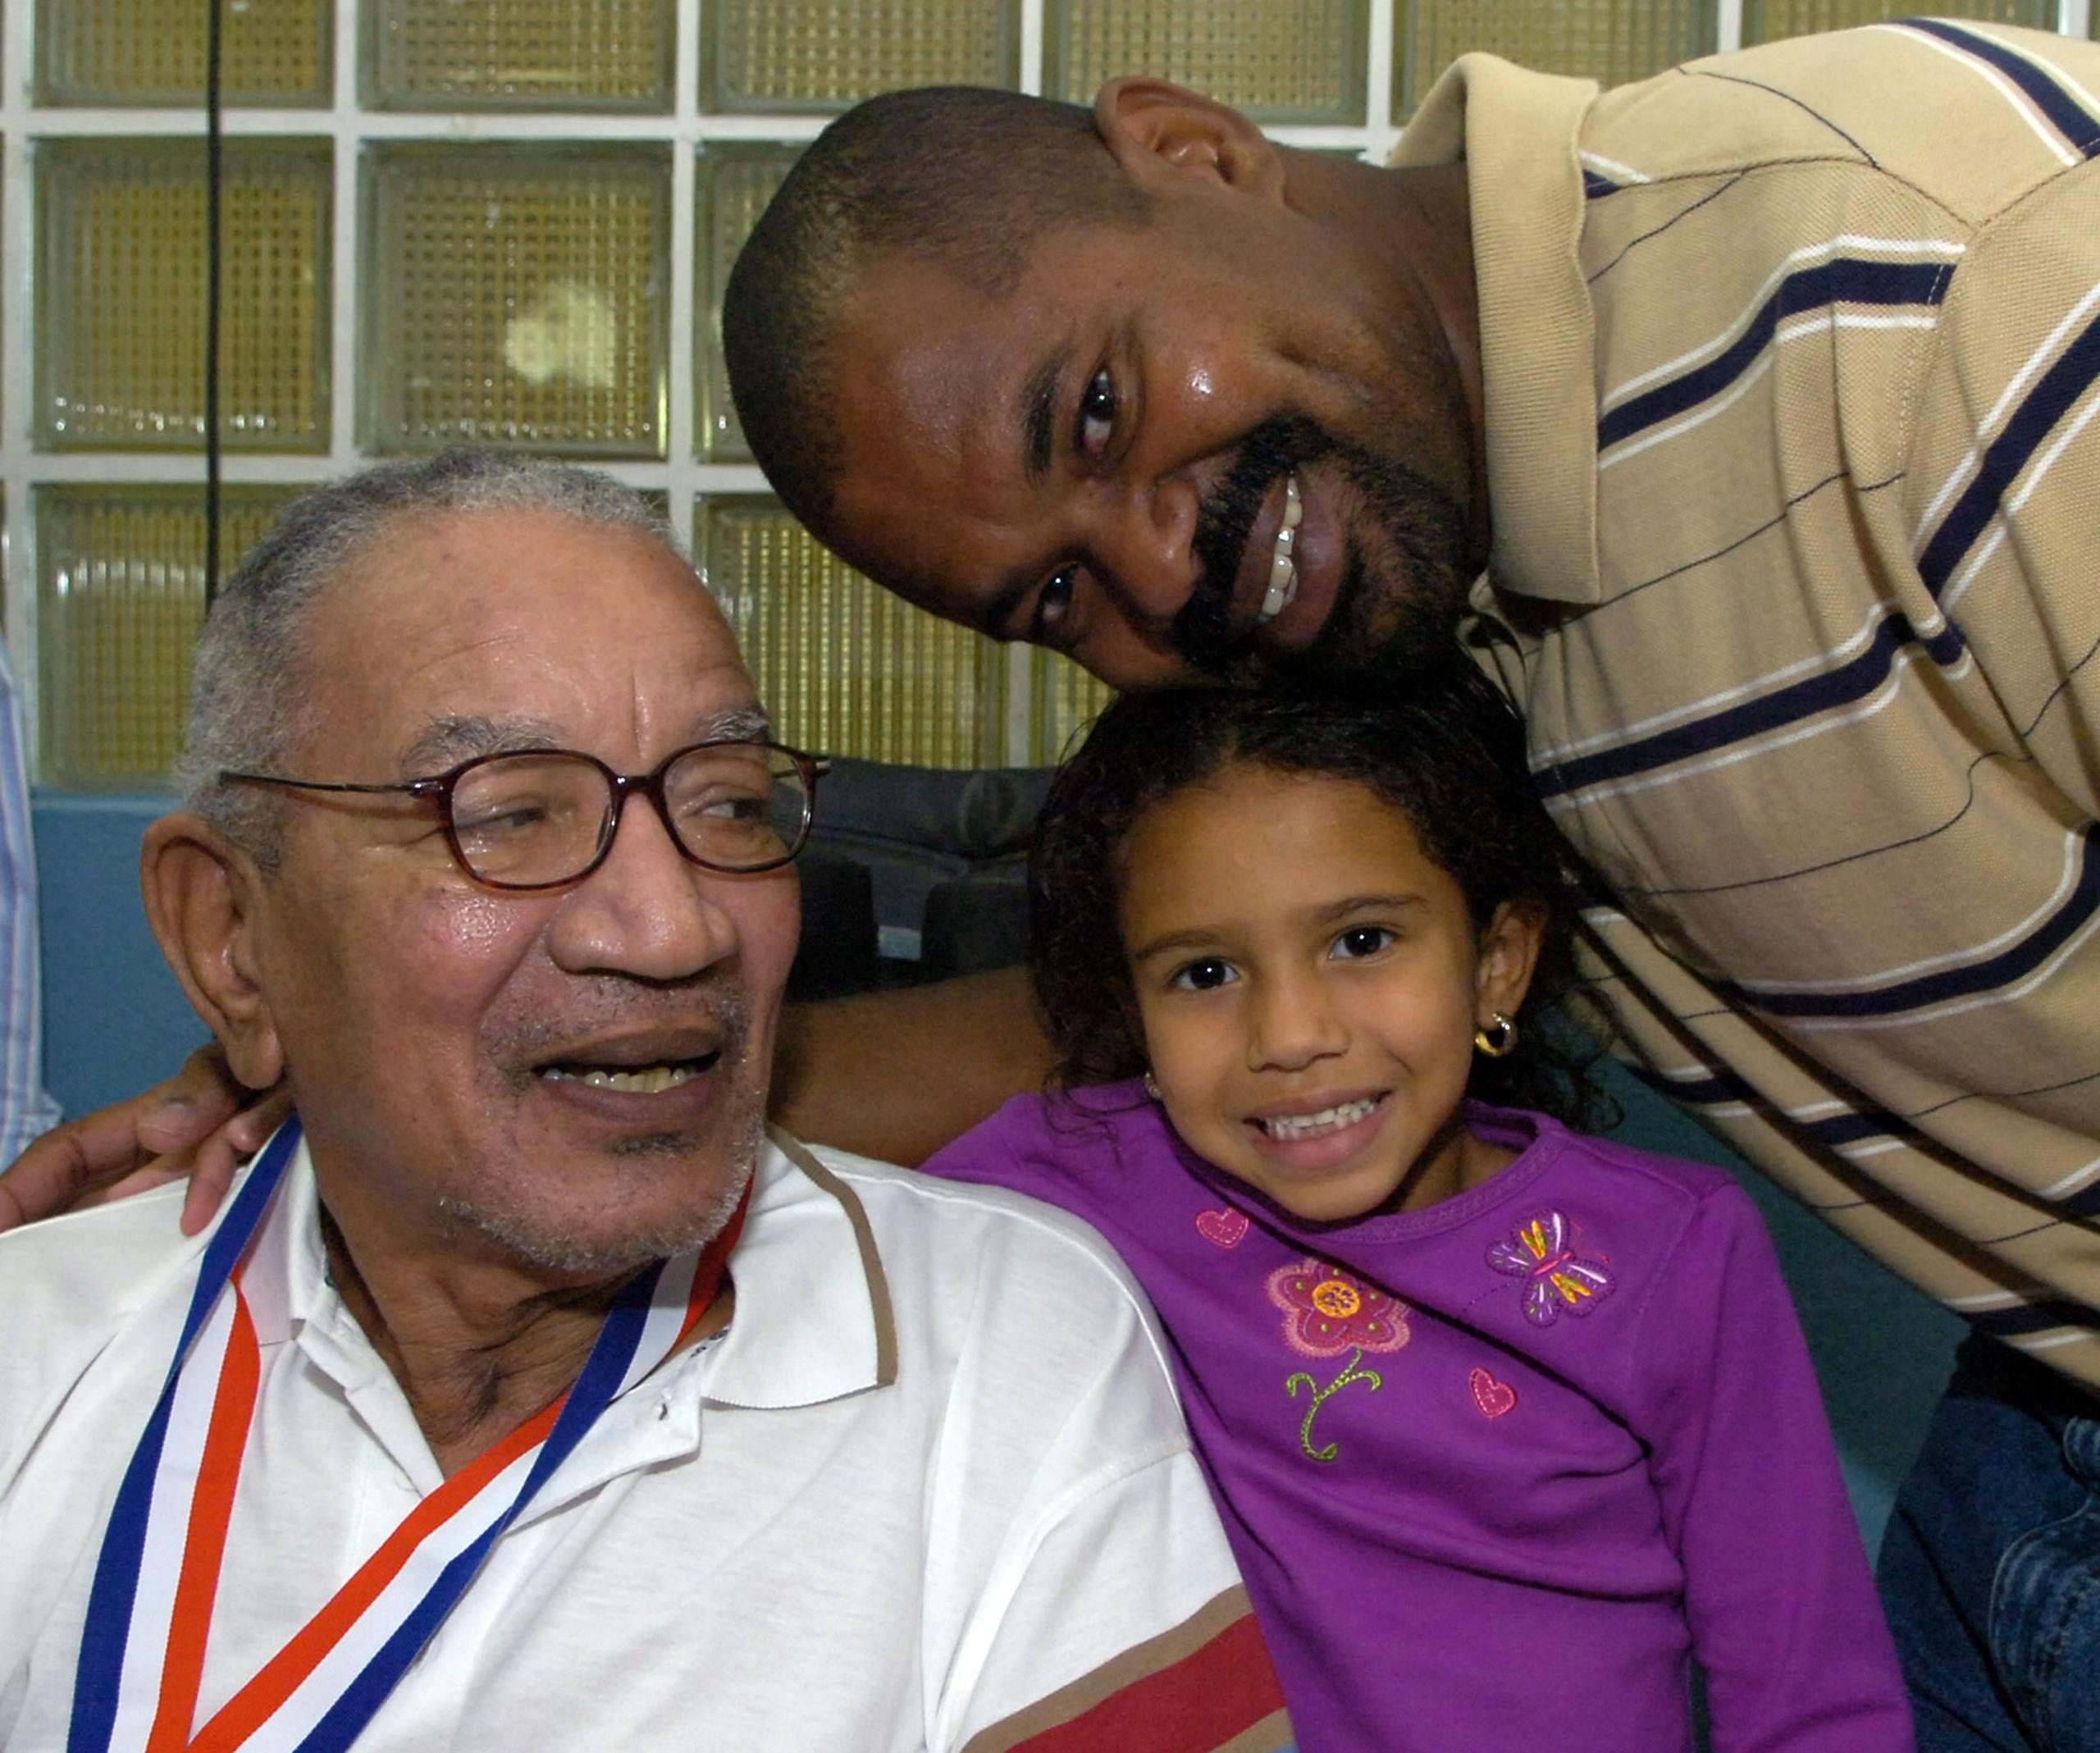 Johnny junto a su nieta Adanis y su hijo Carlos en la una foto de archivo del 2007.